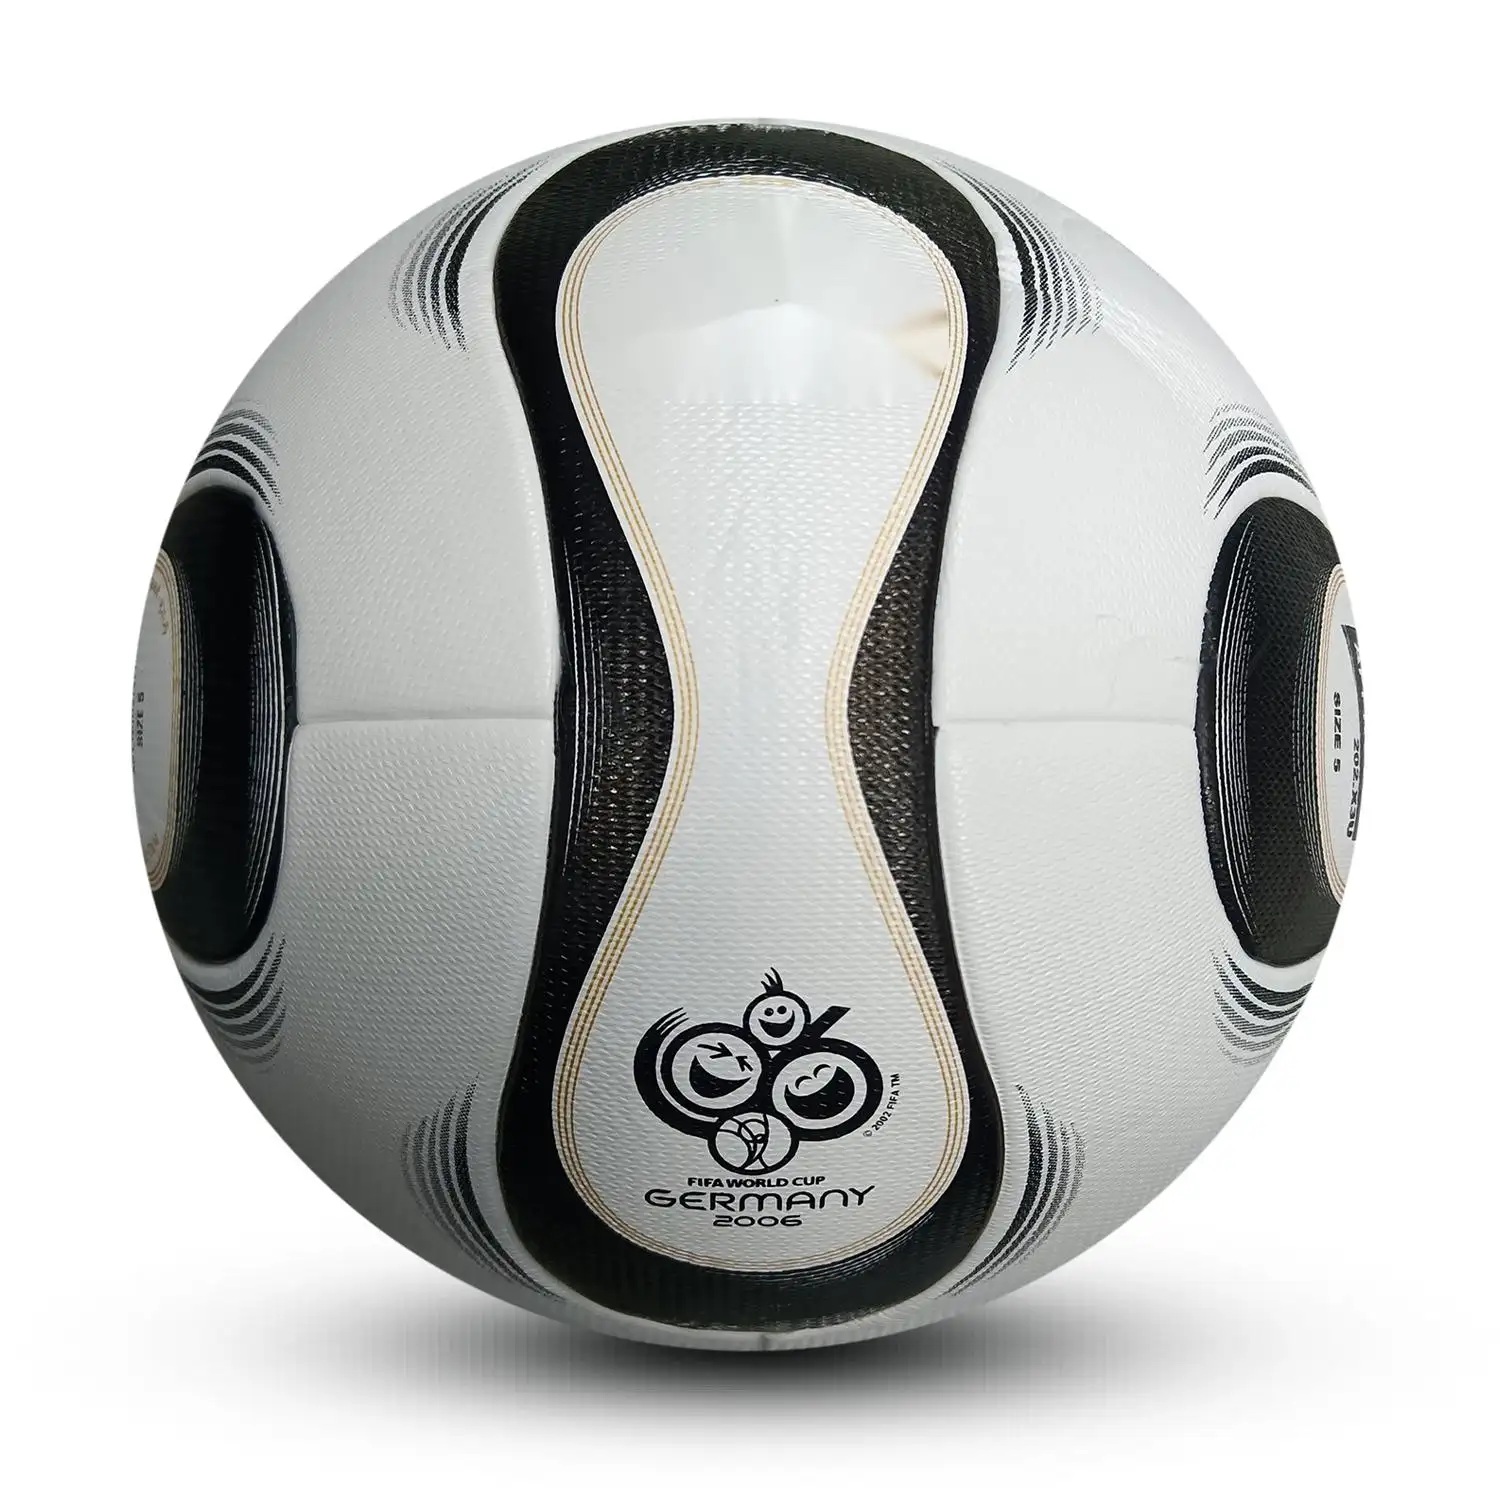 Venta al por mayor nuevo fútbol enseñanza entrenamiento partido balones de fútbol PU antideslizante cuero sin costuras ajuste caliente Fútbol Para Adultos tamaño 4 5